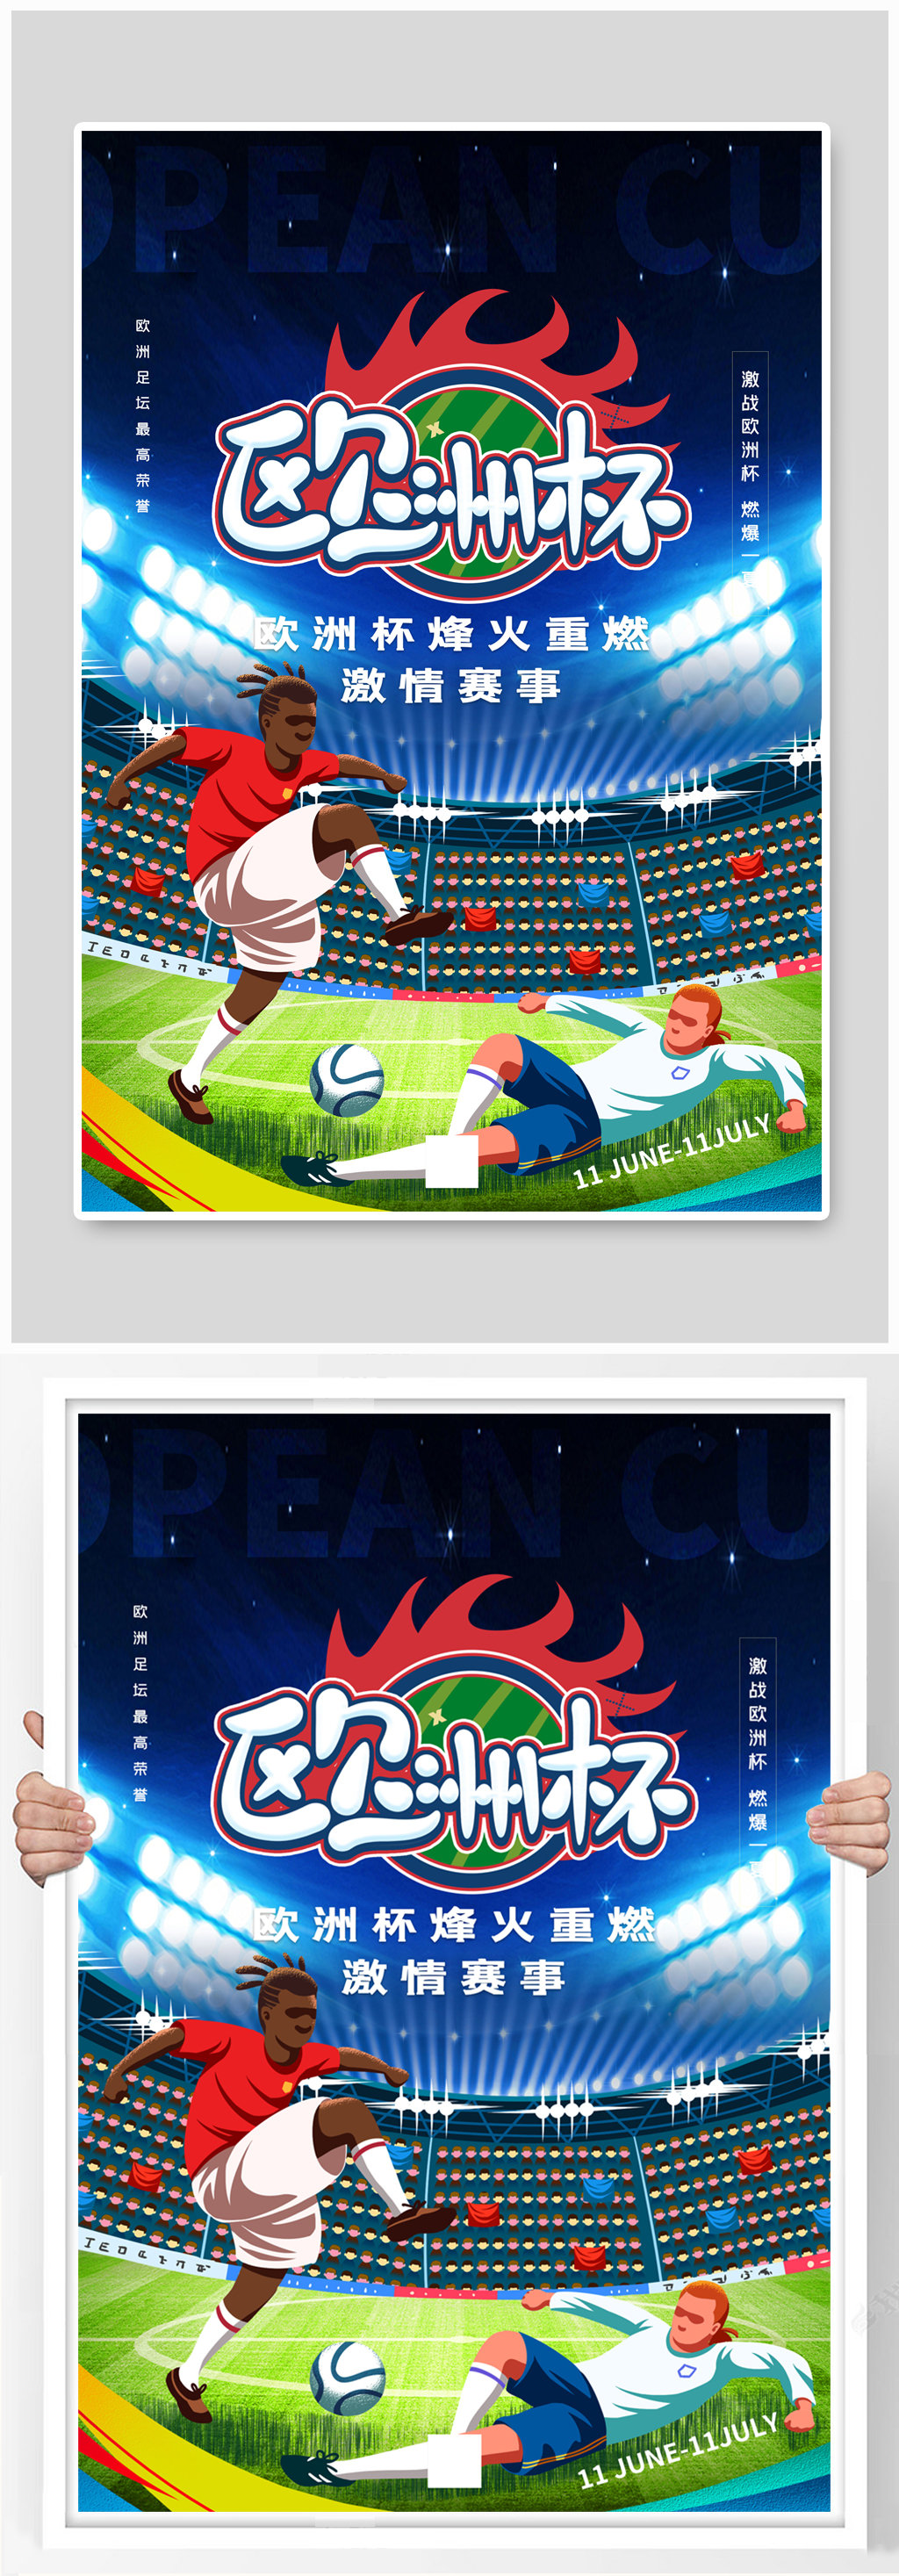 足球比赛欧洲杯海报图片